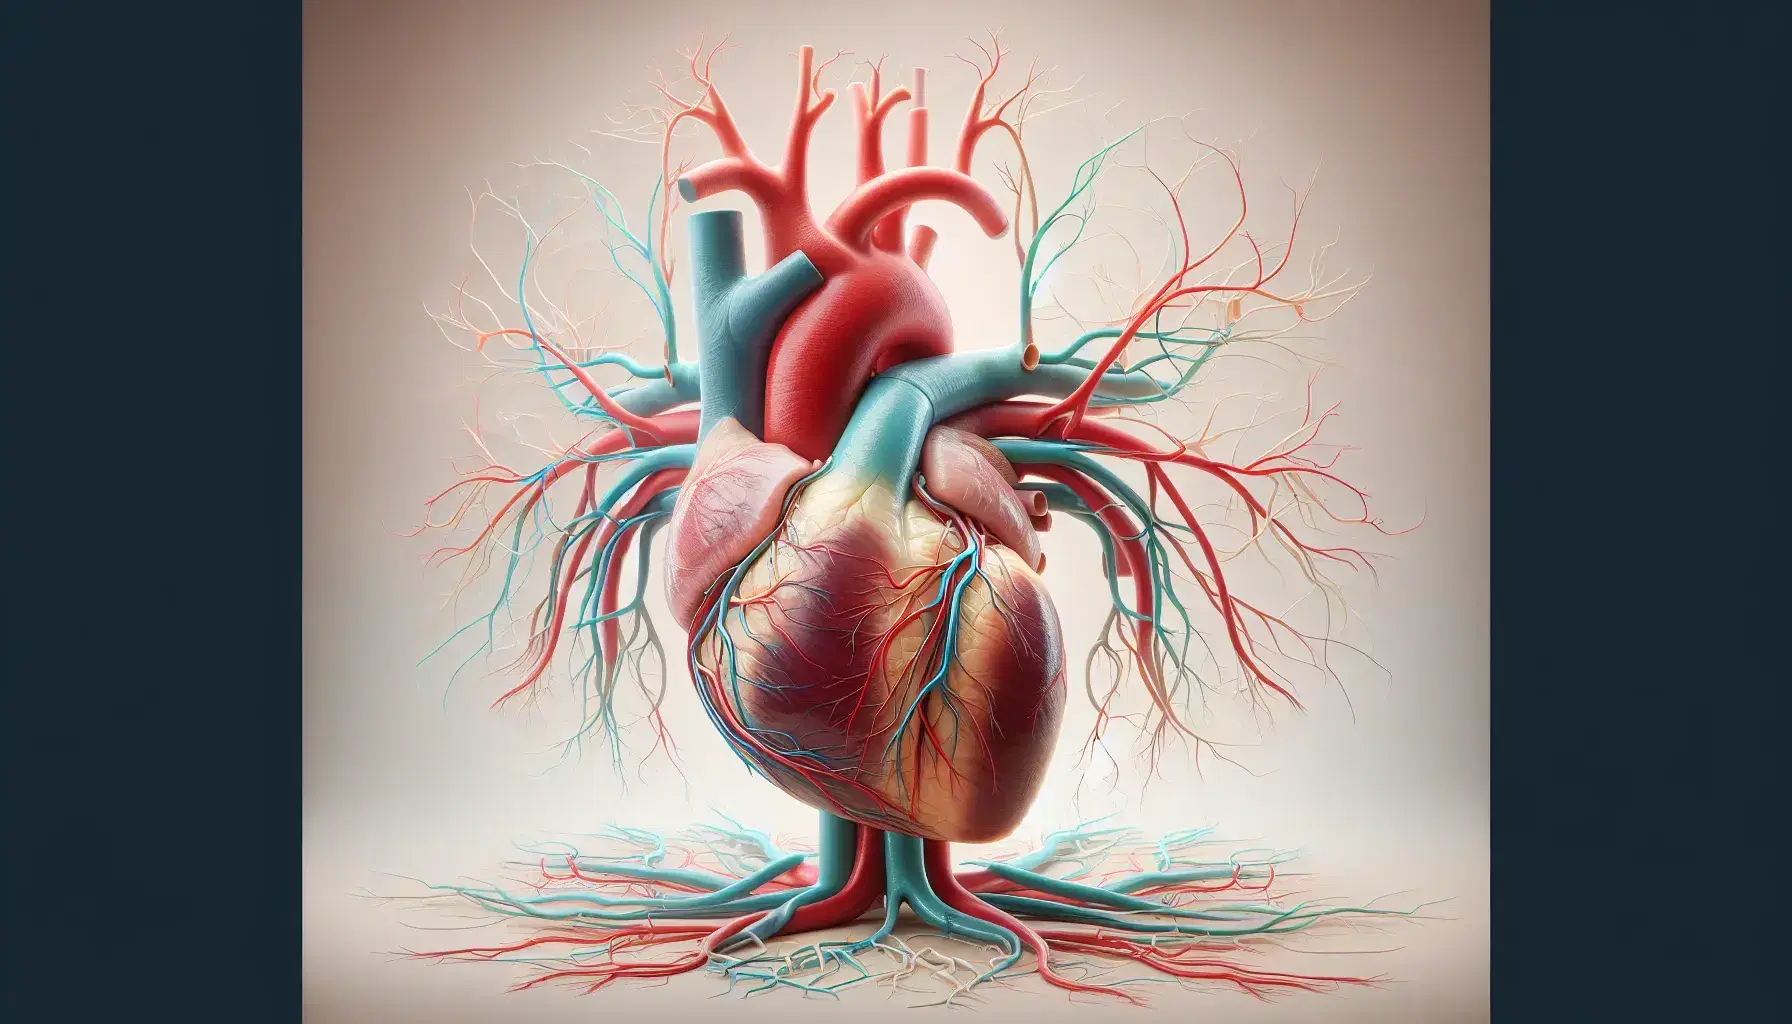 Corazón humano realista en 3D con arterias y venas en rojo y azul y sistema linfático en verde sobre fondo neutro, mostrando la red circulatoria y linfática.